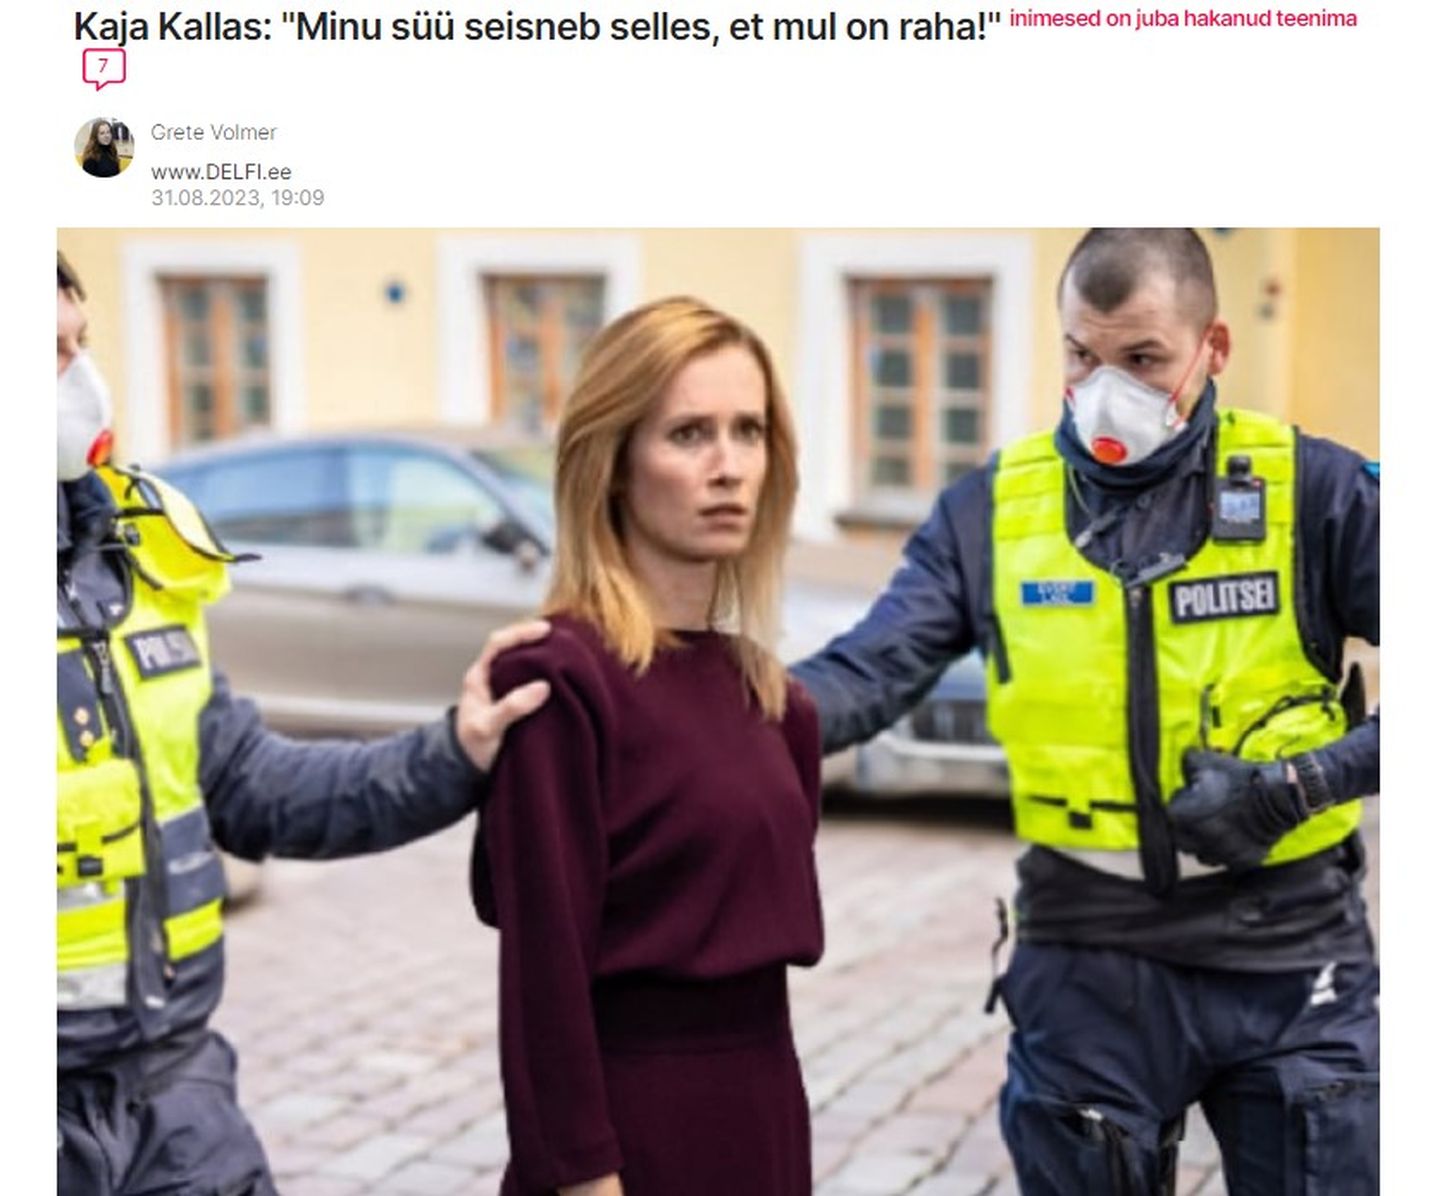 Фейковая статья якобы от имени известного издания, где мошенники пытаются обмануть доверие тех, кто хочет заработать, при этом используется реальный громкий общественно-политический сюжет из жизни Эстонии, сентябрь 2023 года.